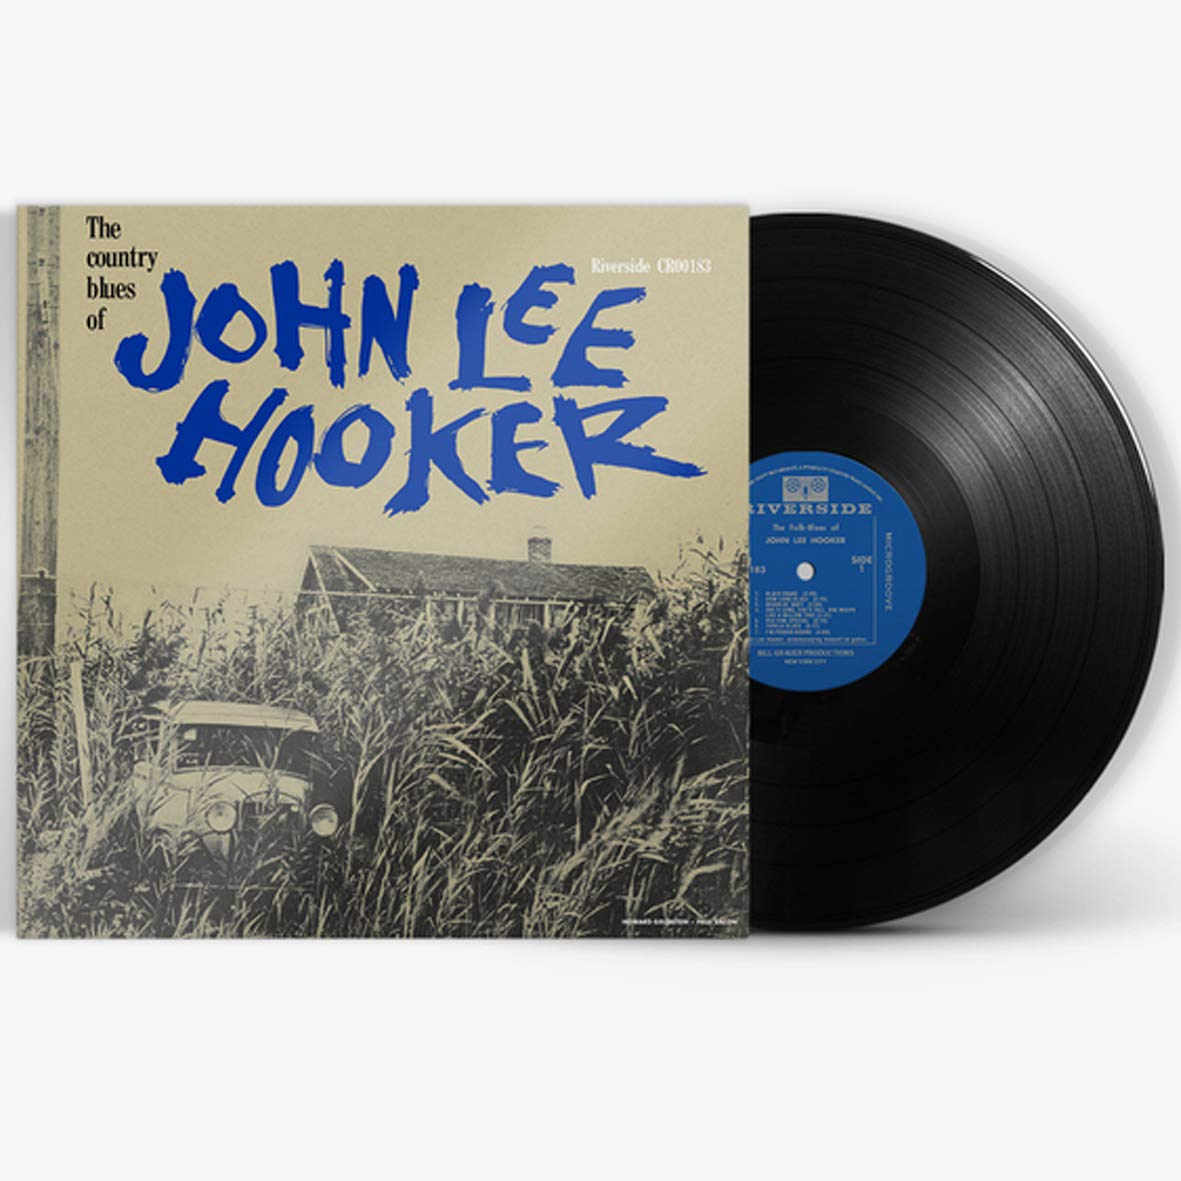 CD Shop - HOOKER JOHN LEE THE COUNTRY BLUES OF JOHN